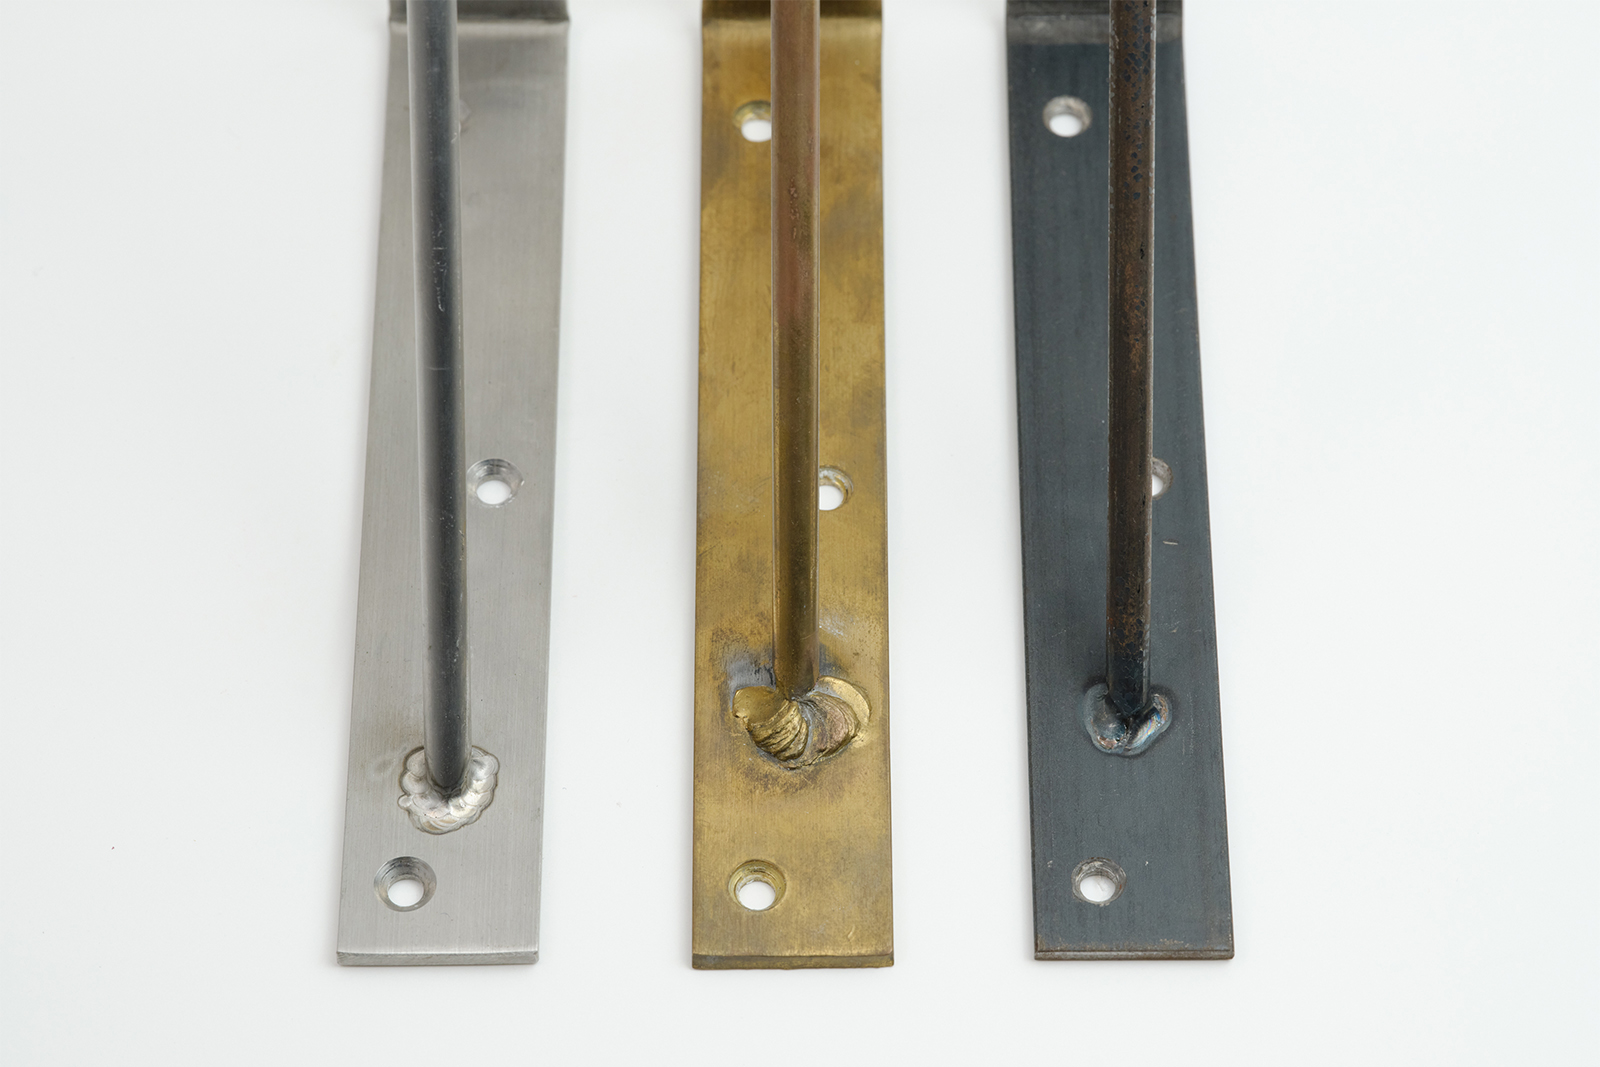 棚受け金物 真鍮 D60 PS-BK001-11-G017 素材は全部で3種類。左から、ステンレス・真鍮・鉄